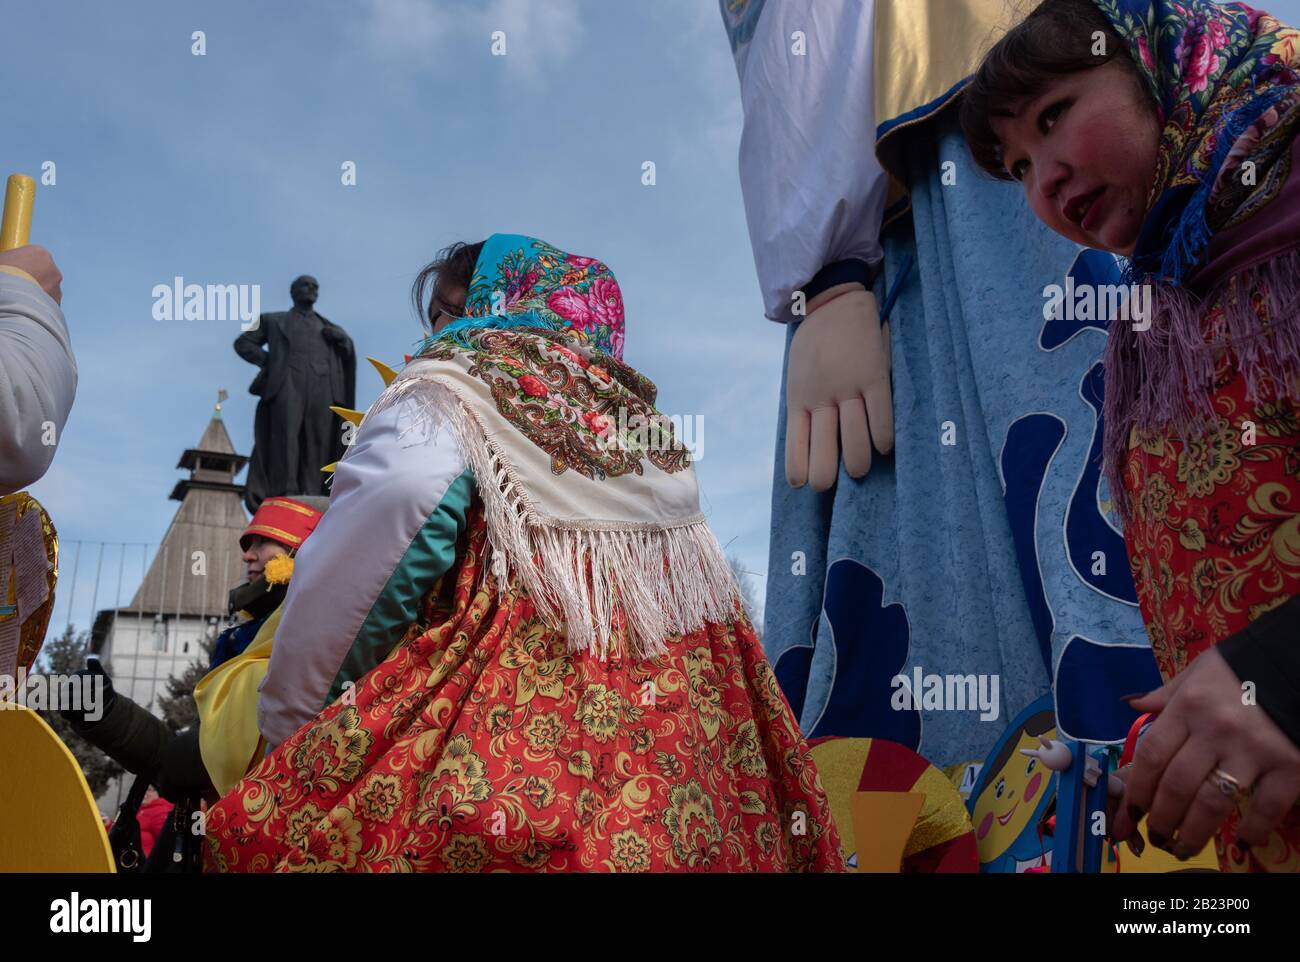 Maslenitsa or pancake week celebrations in Astrakhan, Russia Stock Photo